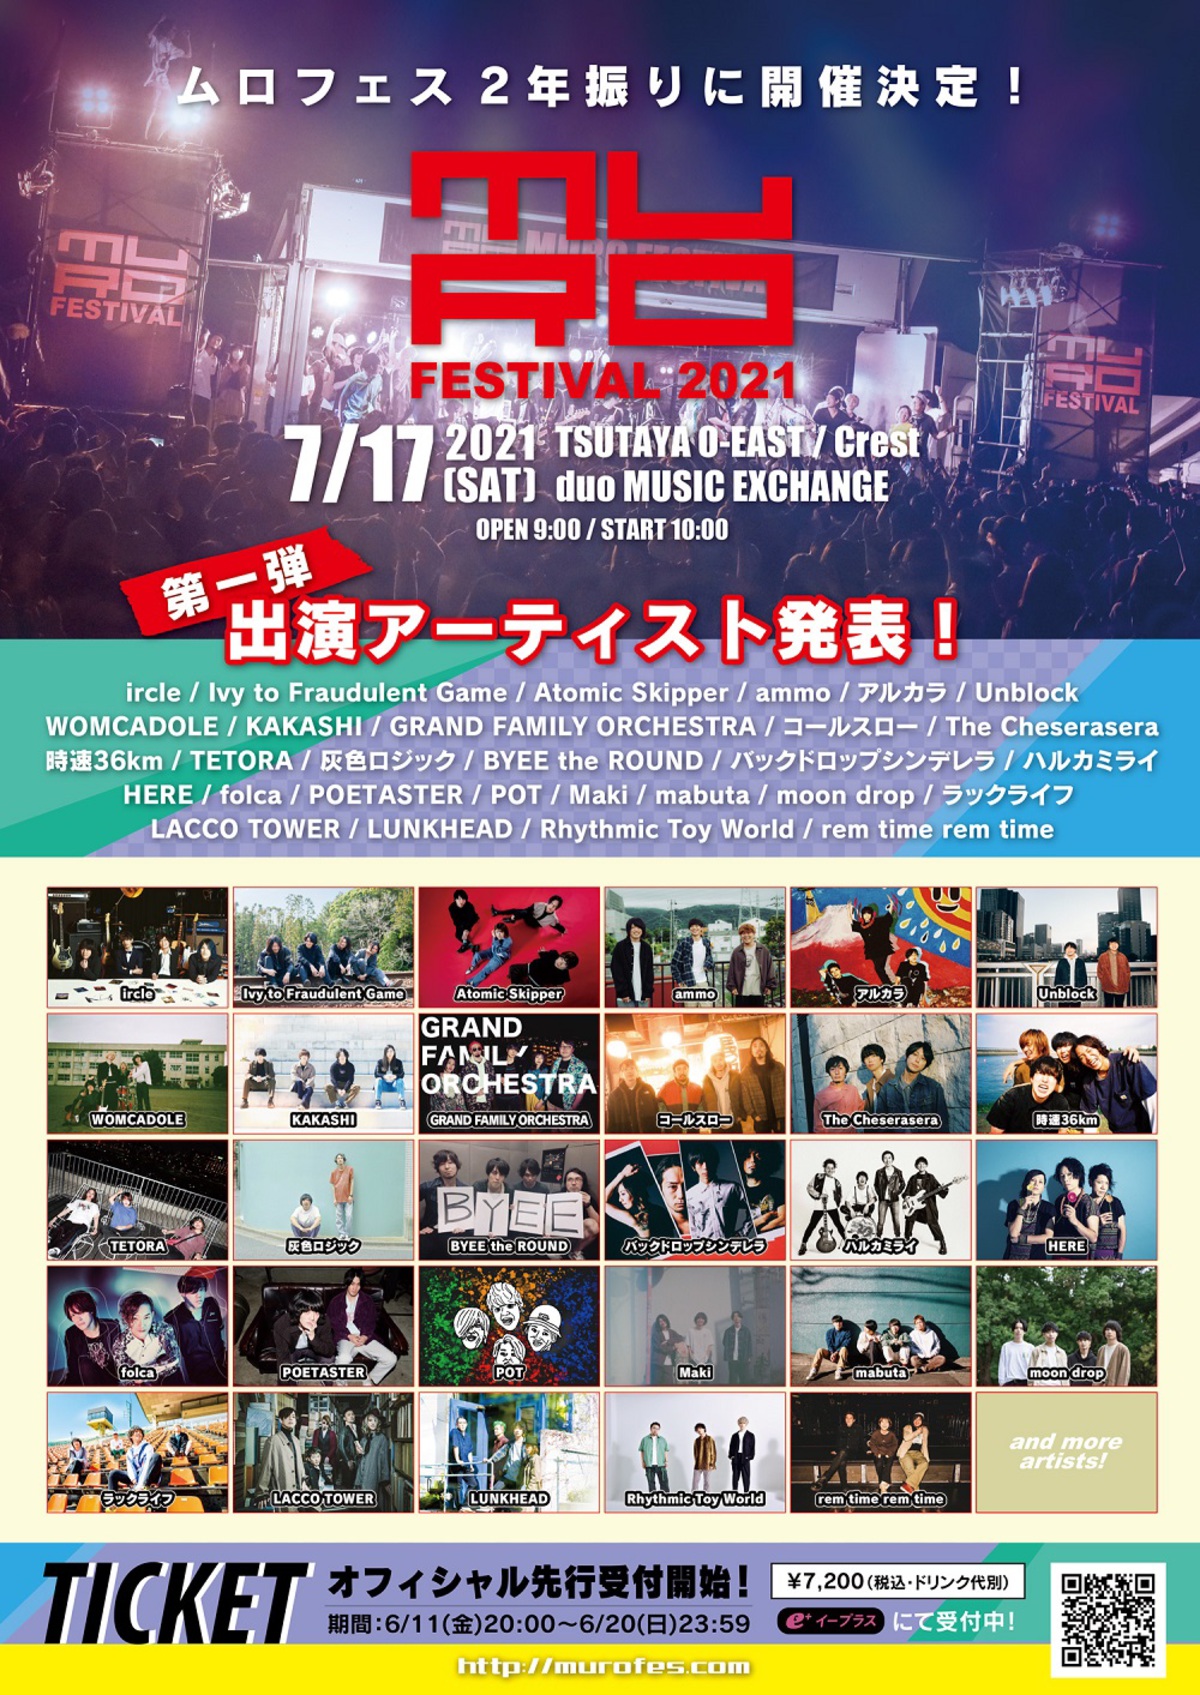 Muro Festival 21 原点である渋谷のライヴハウスで7 17開催決定 第1弾出演アーティストでアルカラ Ircle Lacco Tower Womcadole ラックライフなど29組発表